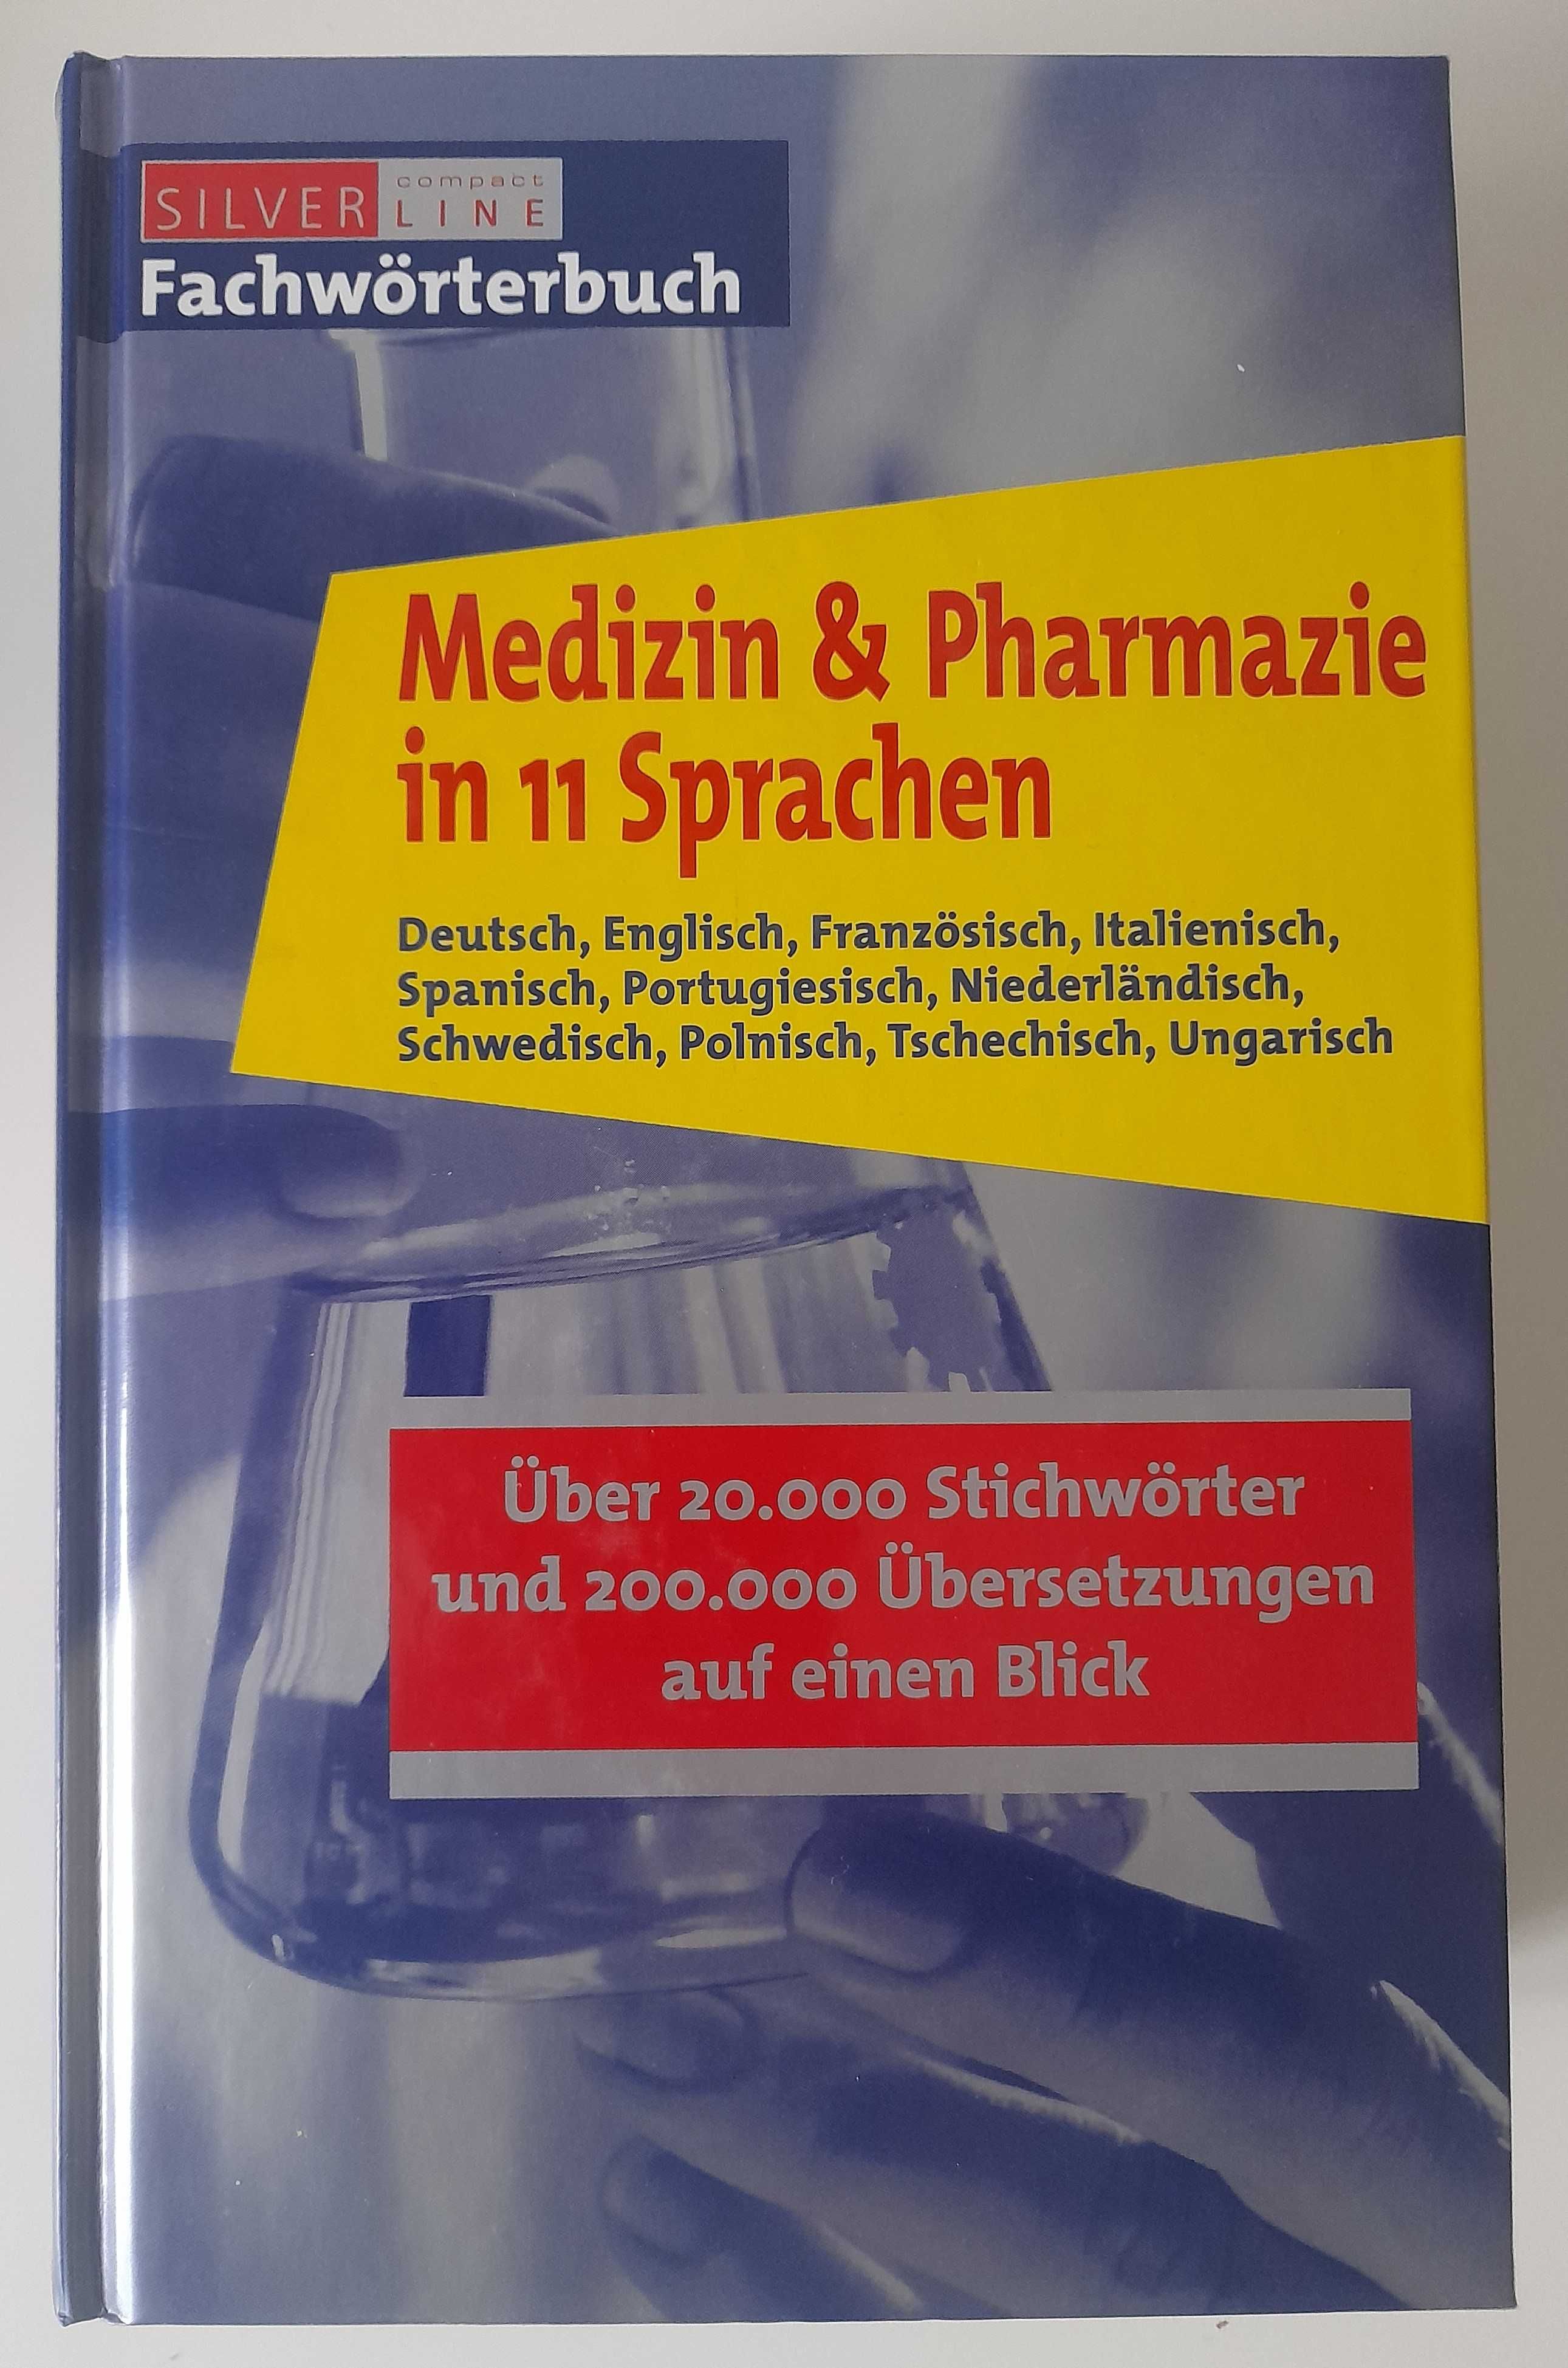 Medycyna i farmacja w 11 językach